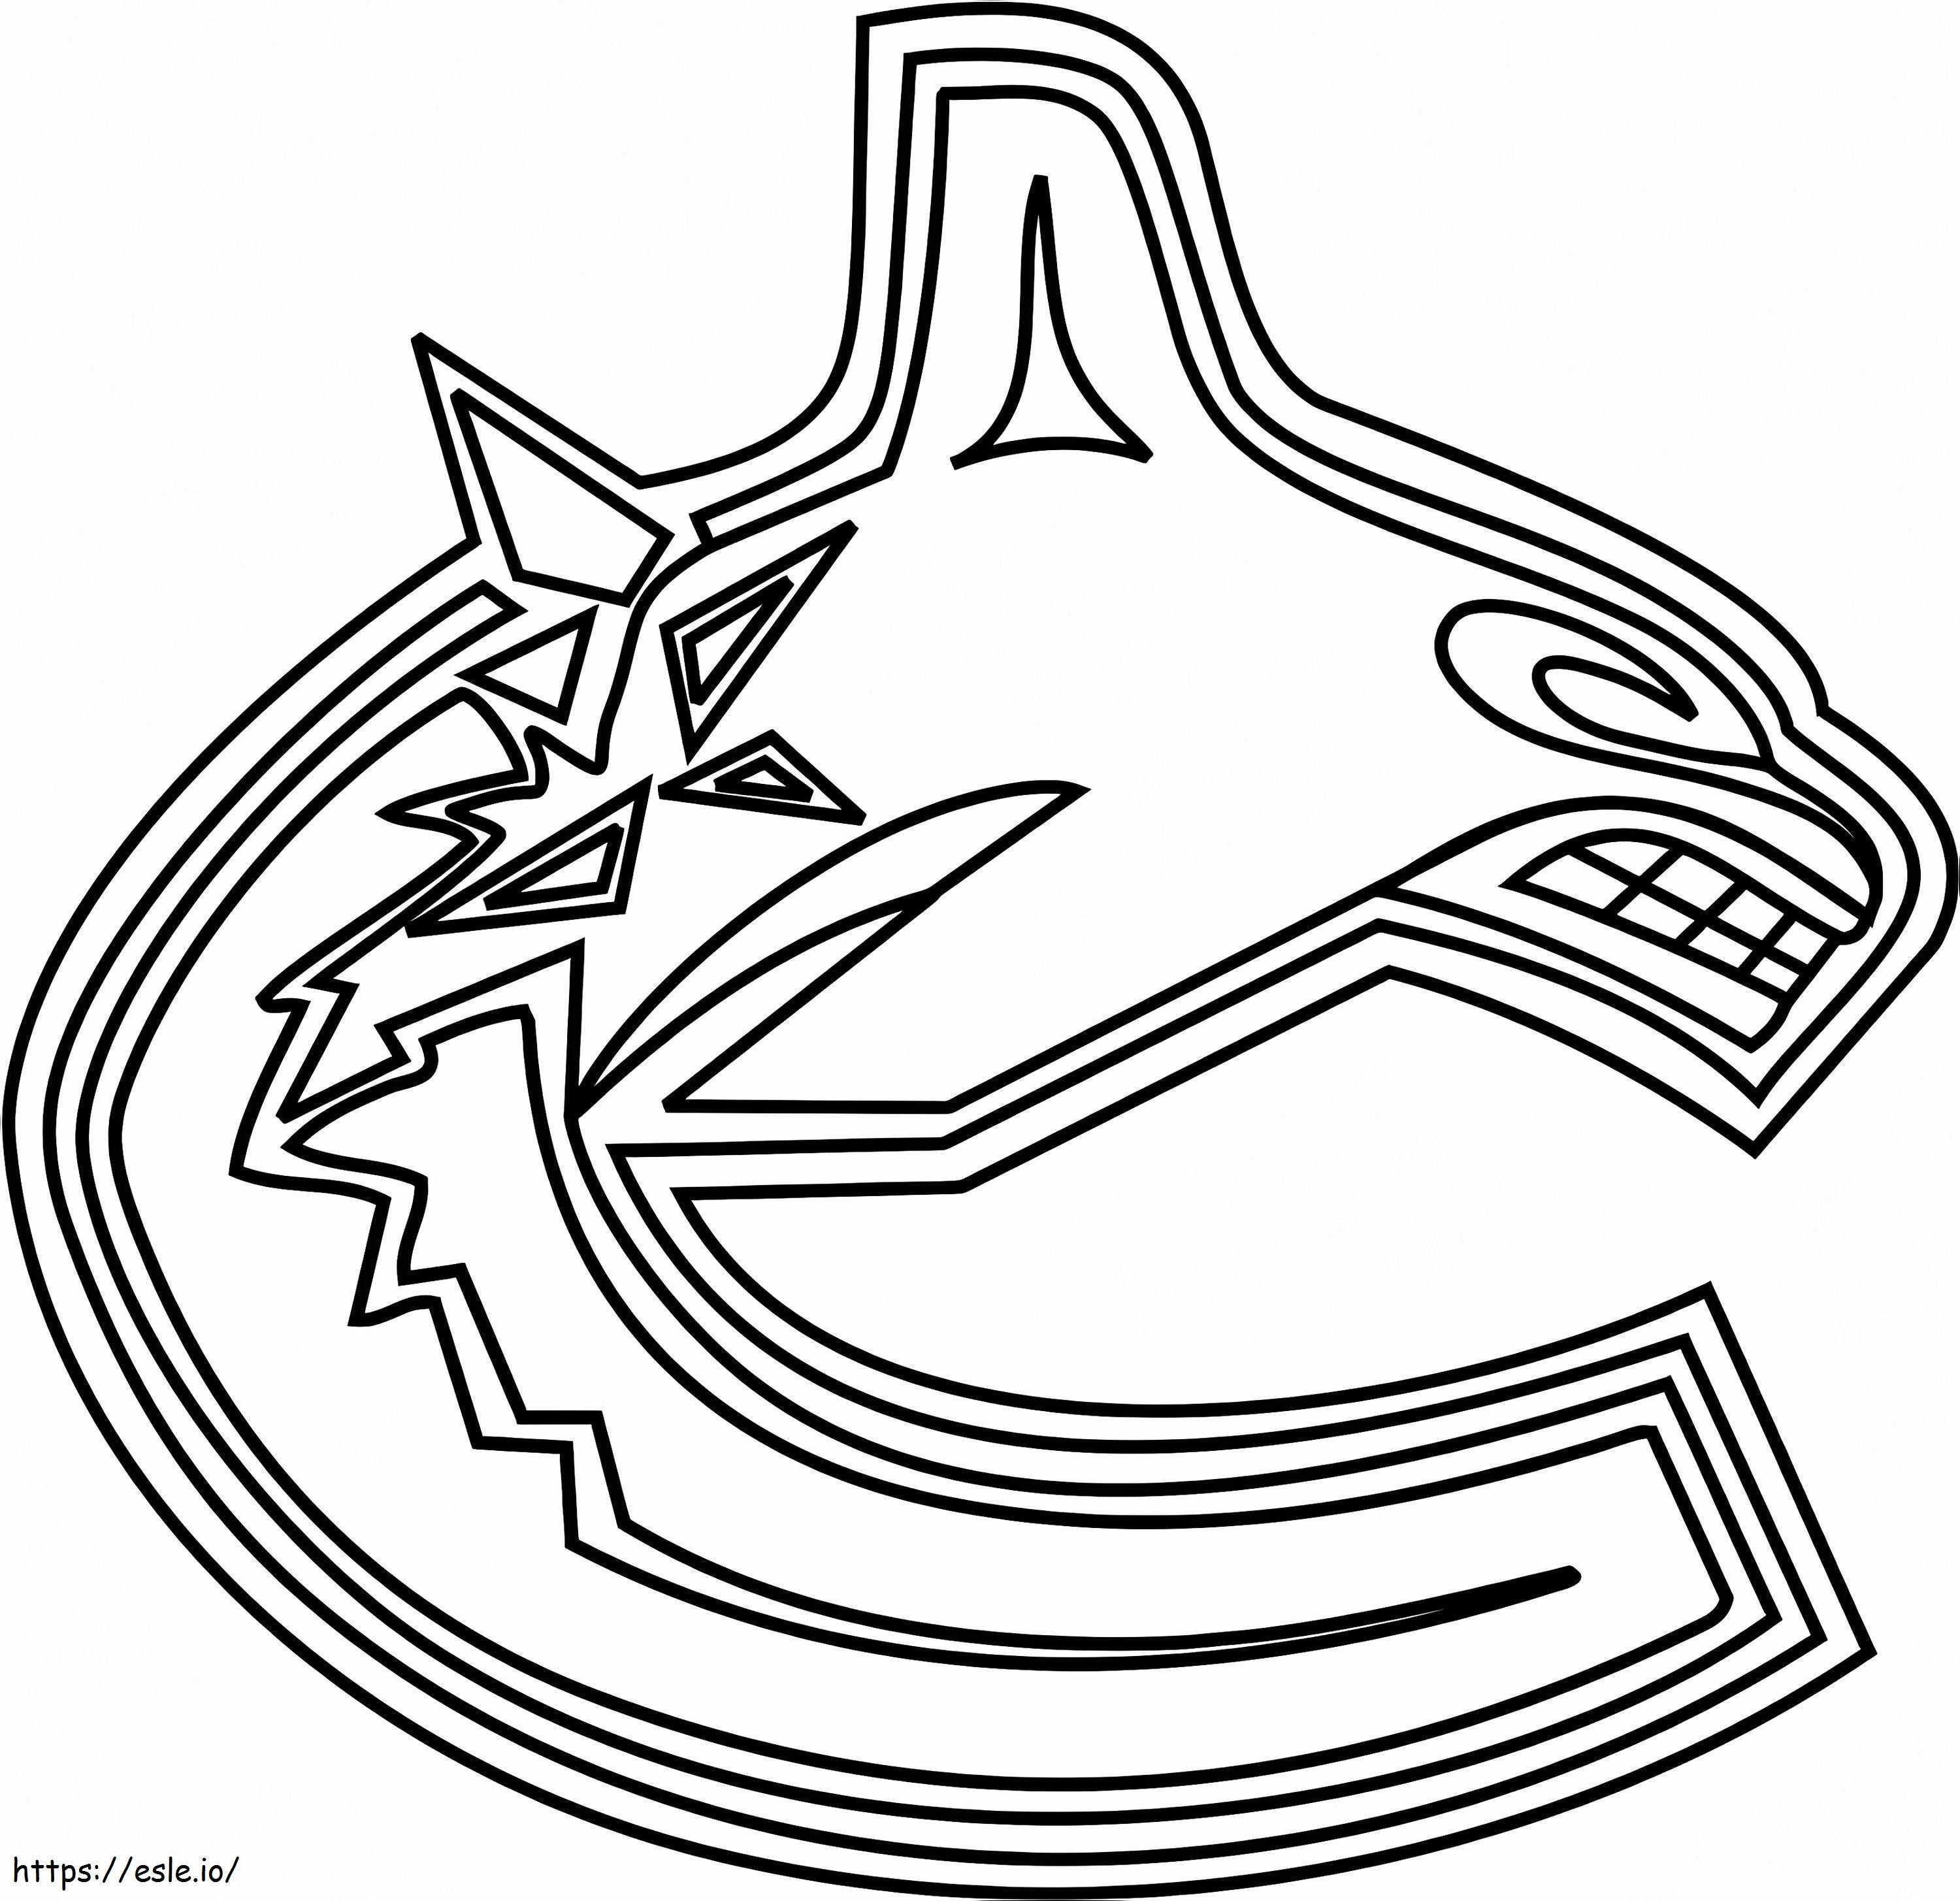 Vancouver Canucks-Logo ausmalbilder